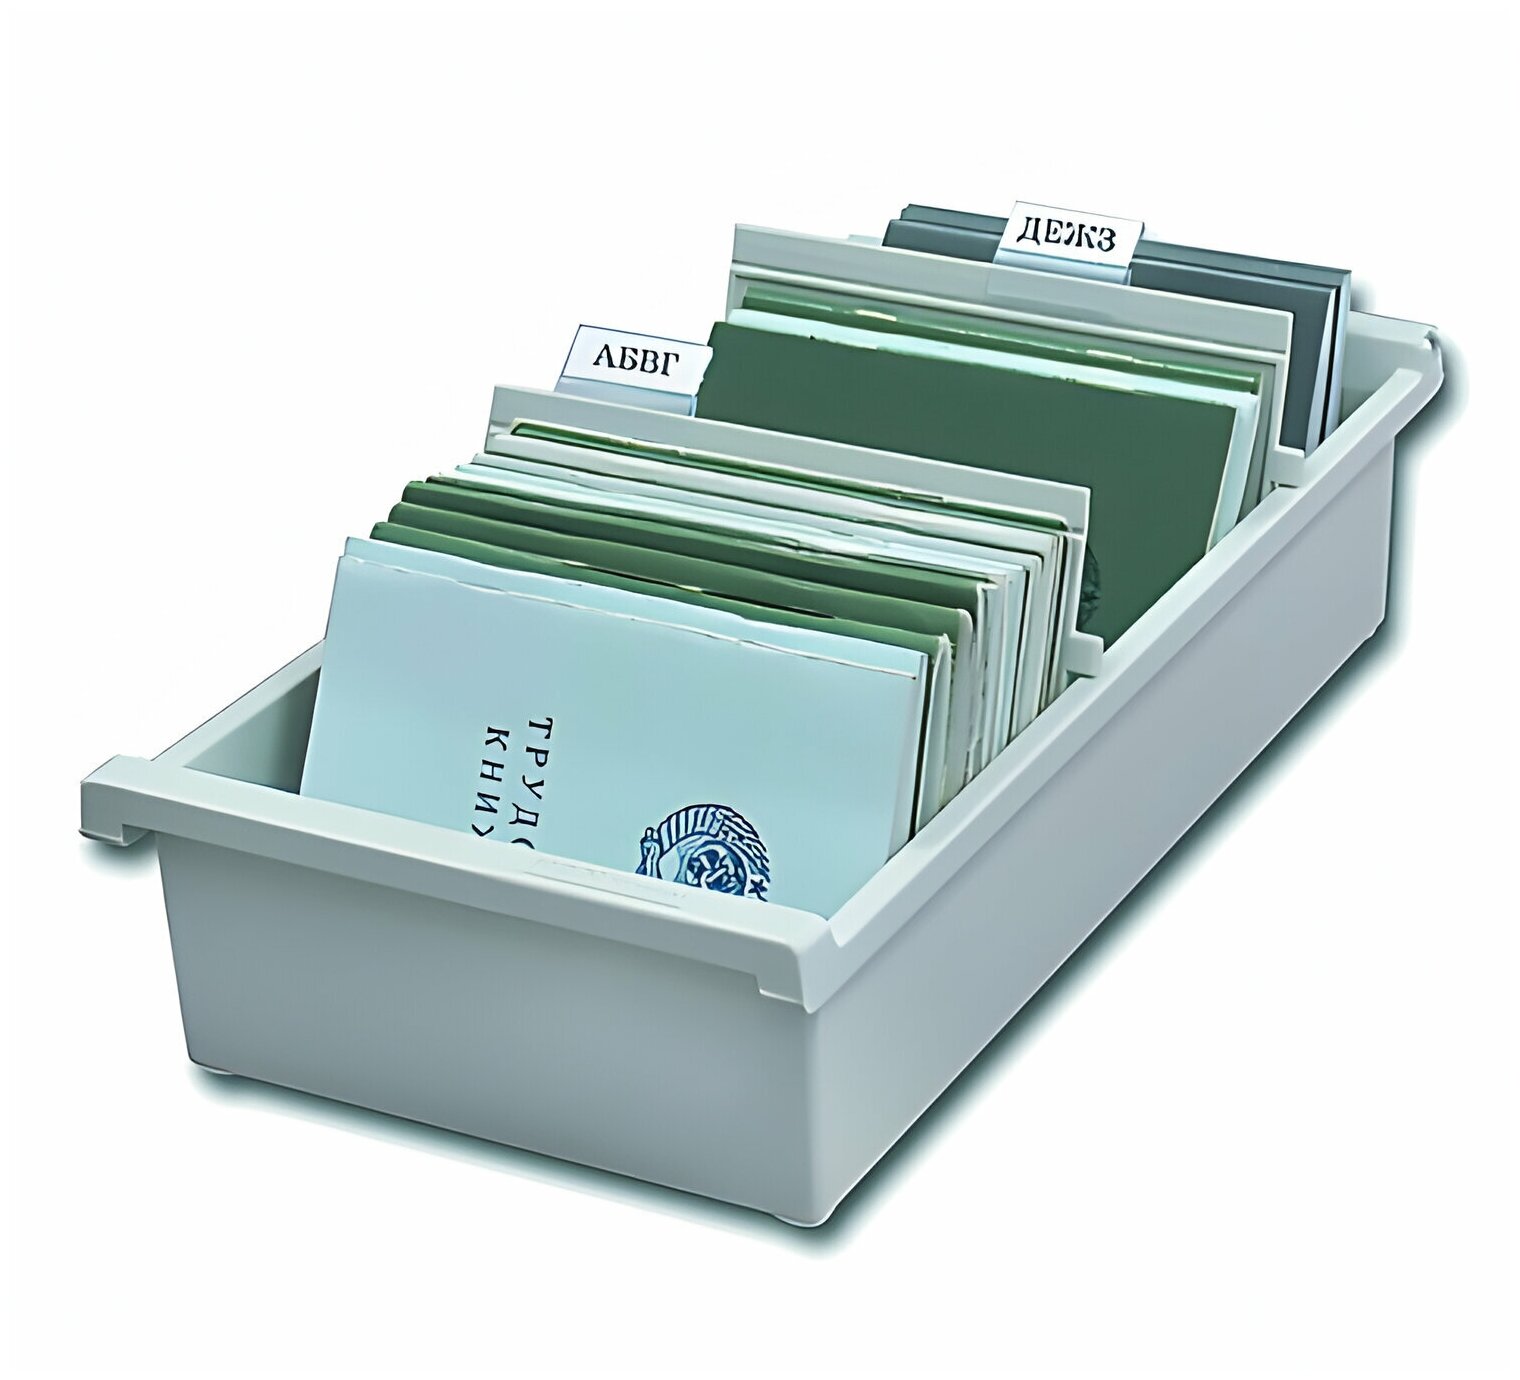 Картотека пластиковая формат А6 (148×105 мм) горизонтальная на 1300 карт, серая, HAN (Германия), НА956/0/11 /Квант продажи 1 ед./